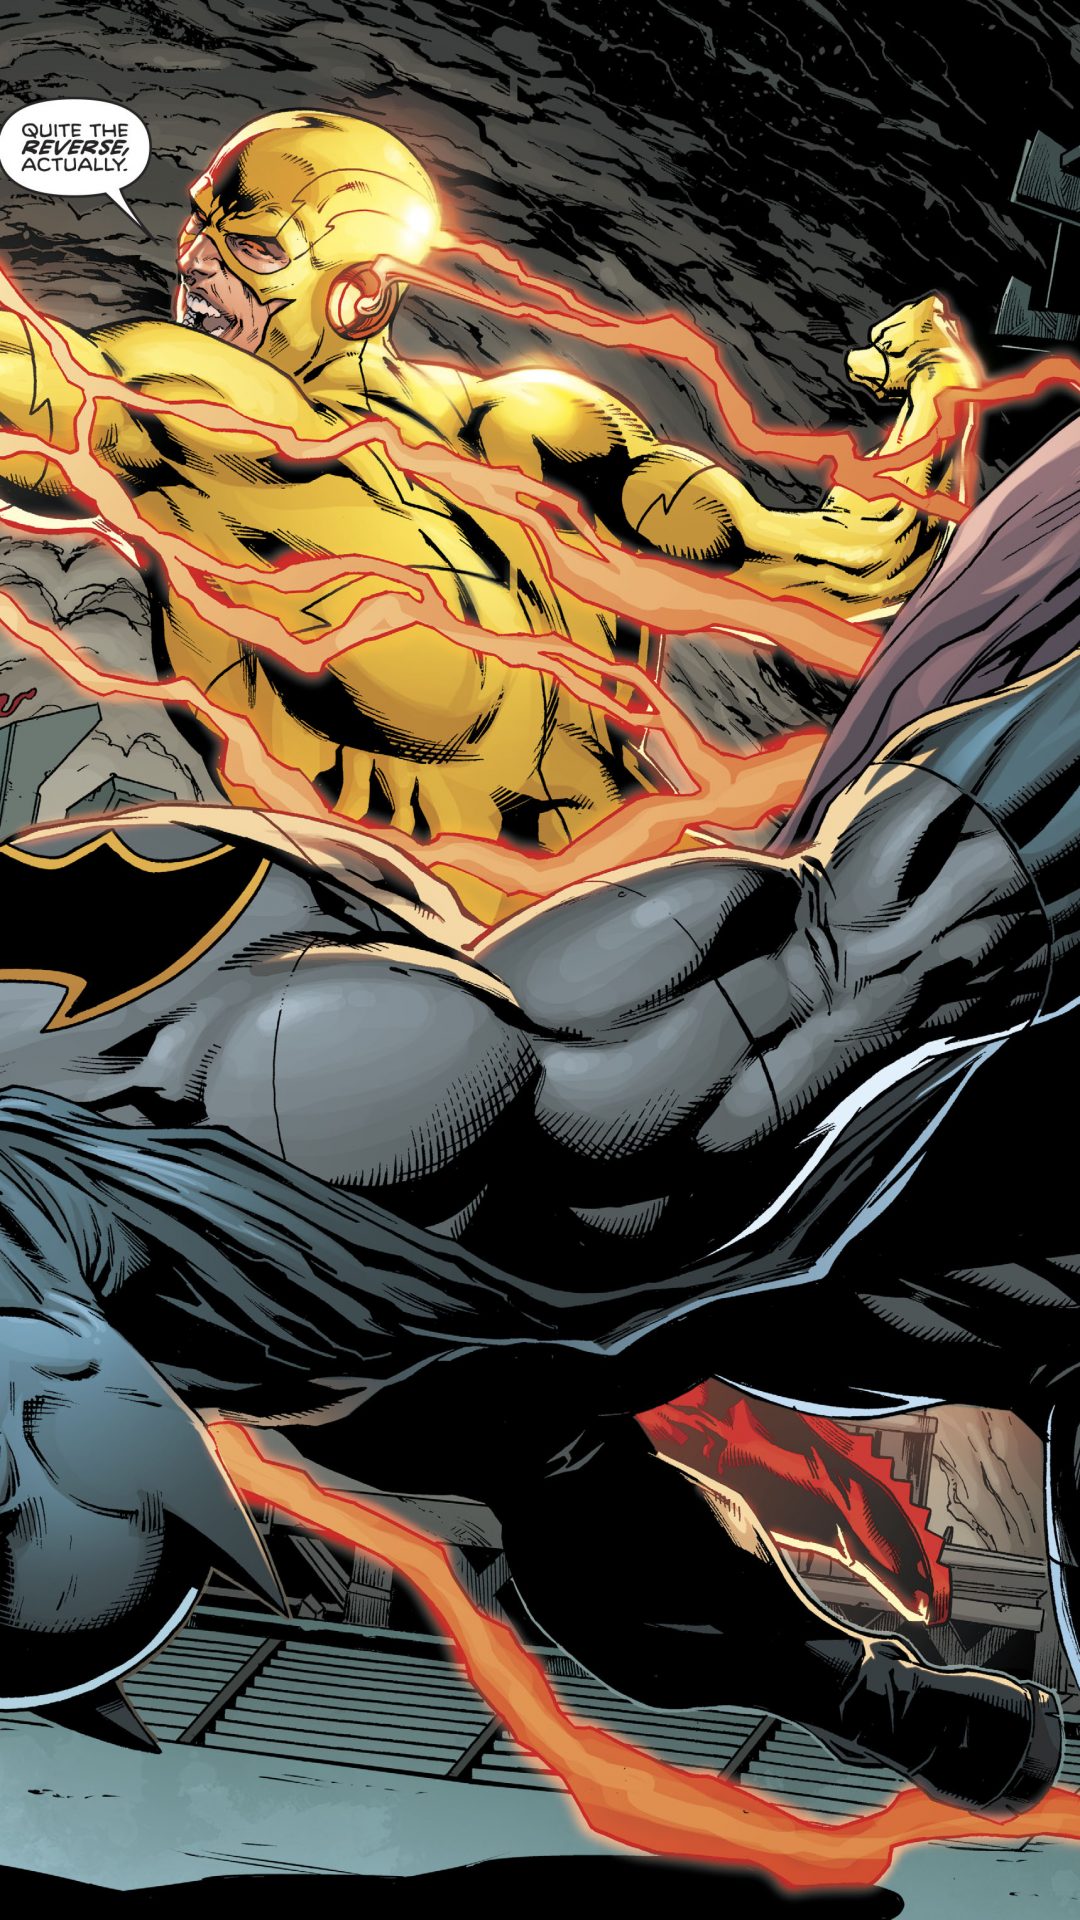 Batman vs Reverse Flash (DC Comics) 4K UHD Wallpaper